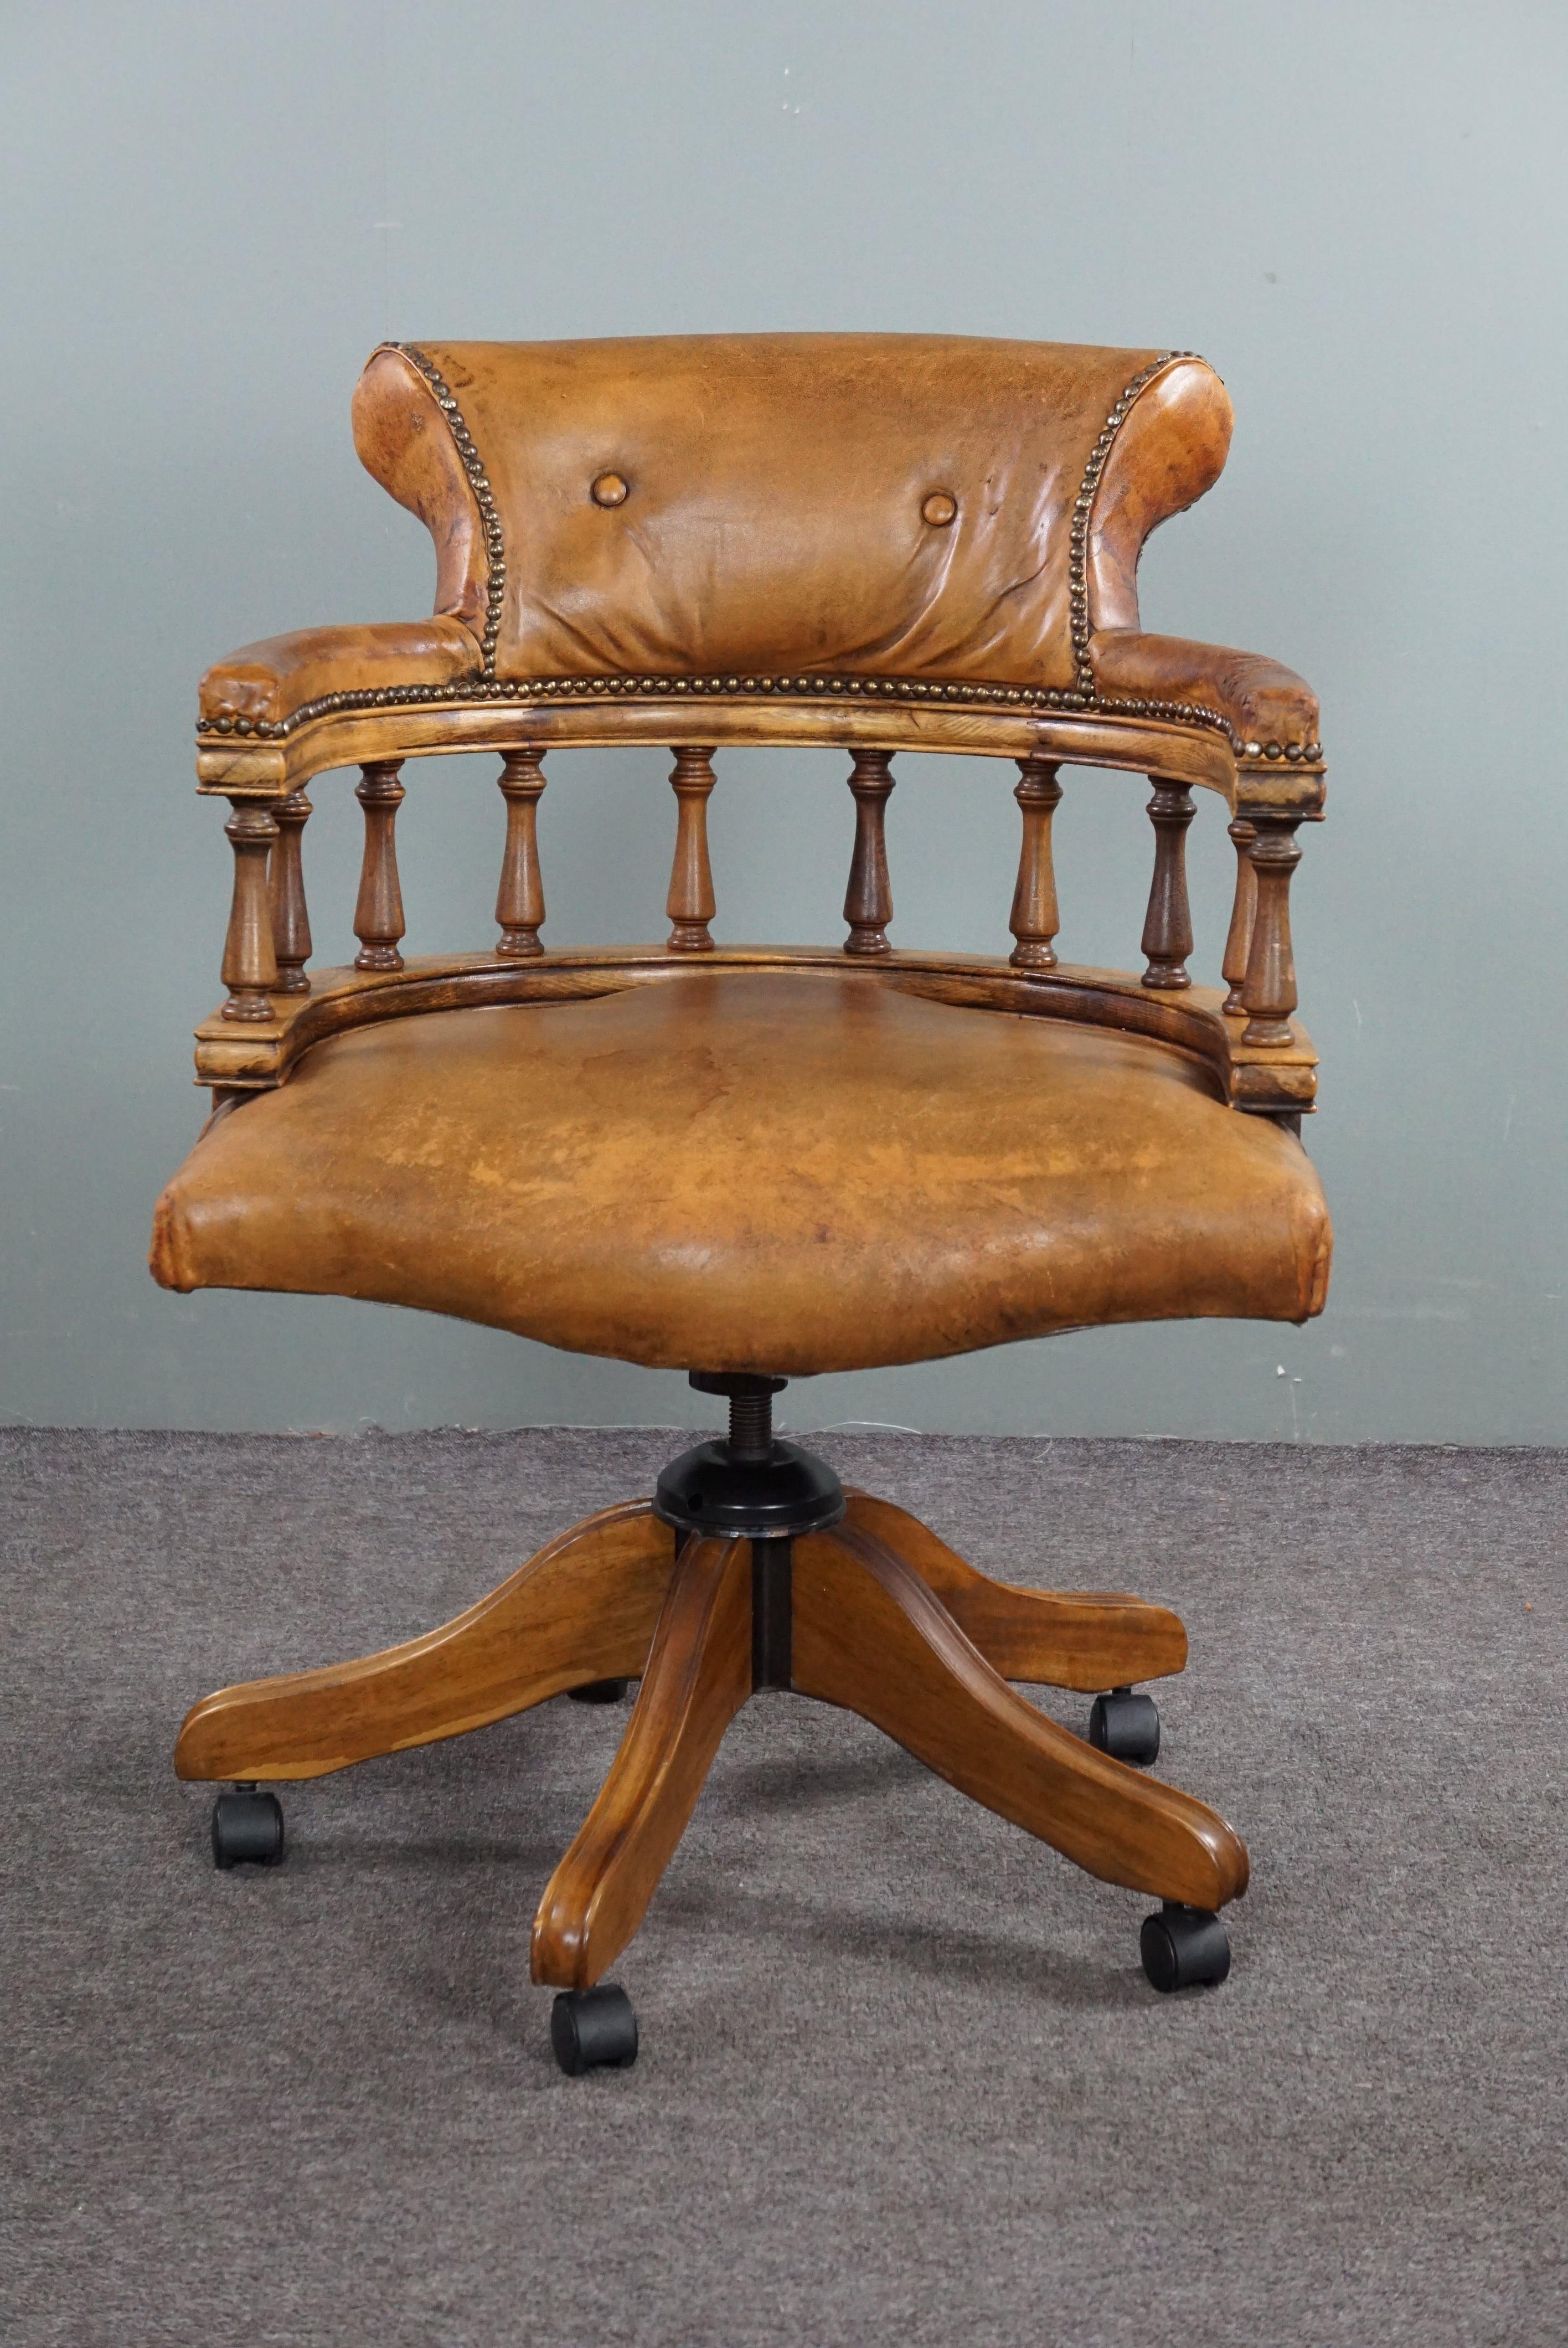 Dieser elegante Kapitänssessel ist sowohl höhenverstellbar als auch kippbar.

Dieser schöne Captains Chair ist mit seinen Ziernägeln und dem warmen Holz ein echter Blickfang auf Ihrem Schreibtisch. Dieser Bürostuhl im englischen Chesterfield-Stil